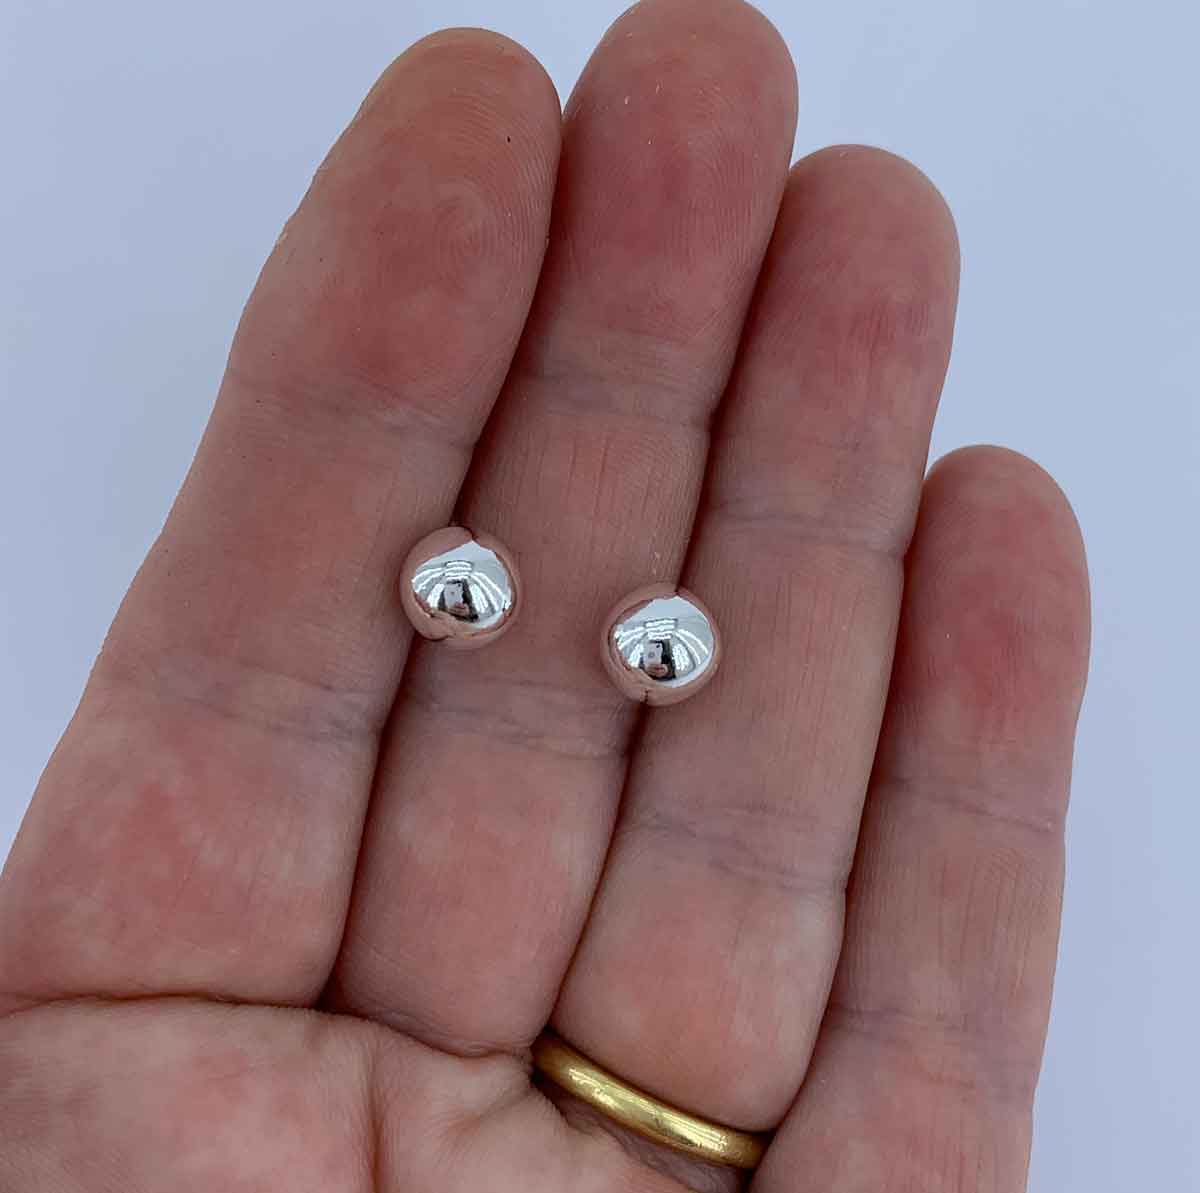 silver ball stud earrings for women